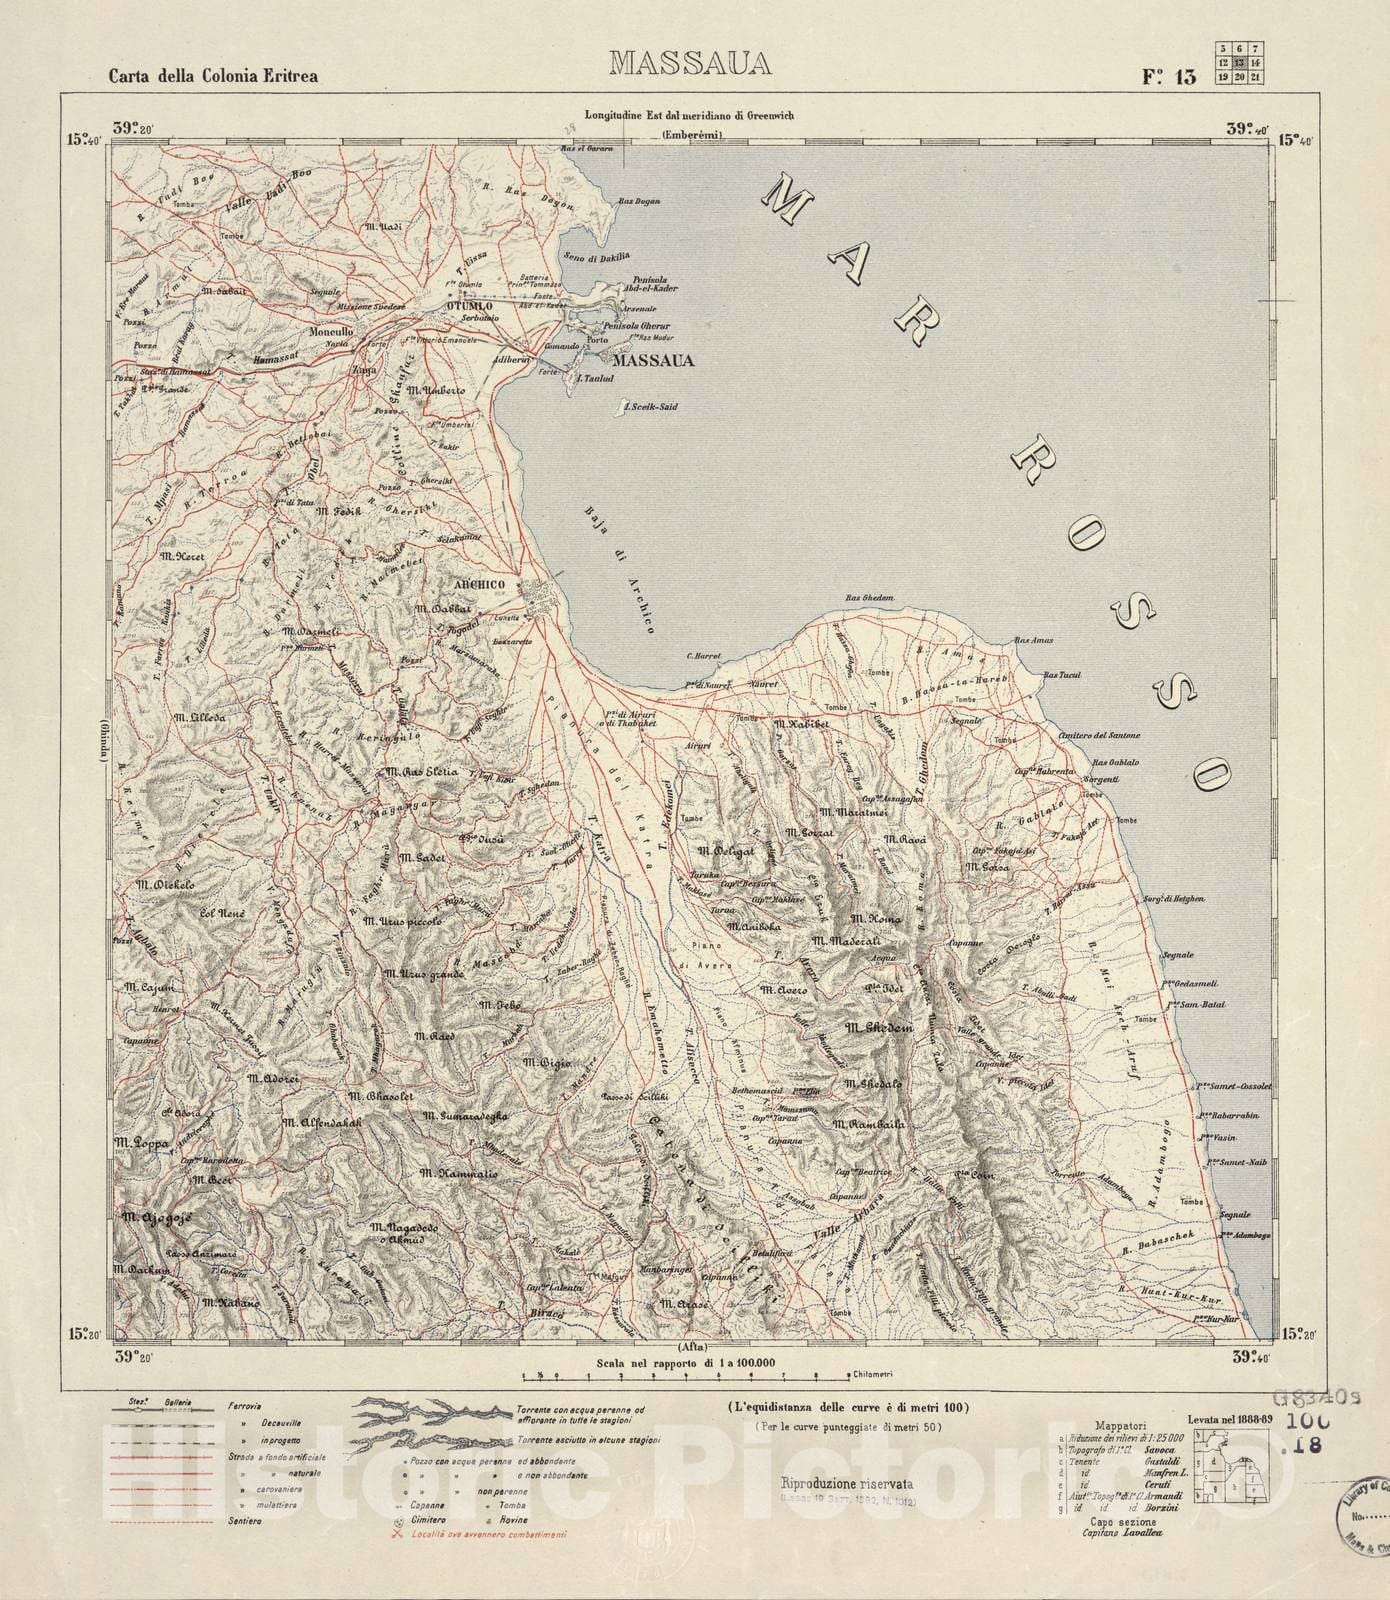 Historic 1889 Map - Carta Della Colonia Eritrea. - Massaua - F.13-1882 -  Historic Pictoric